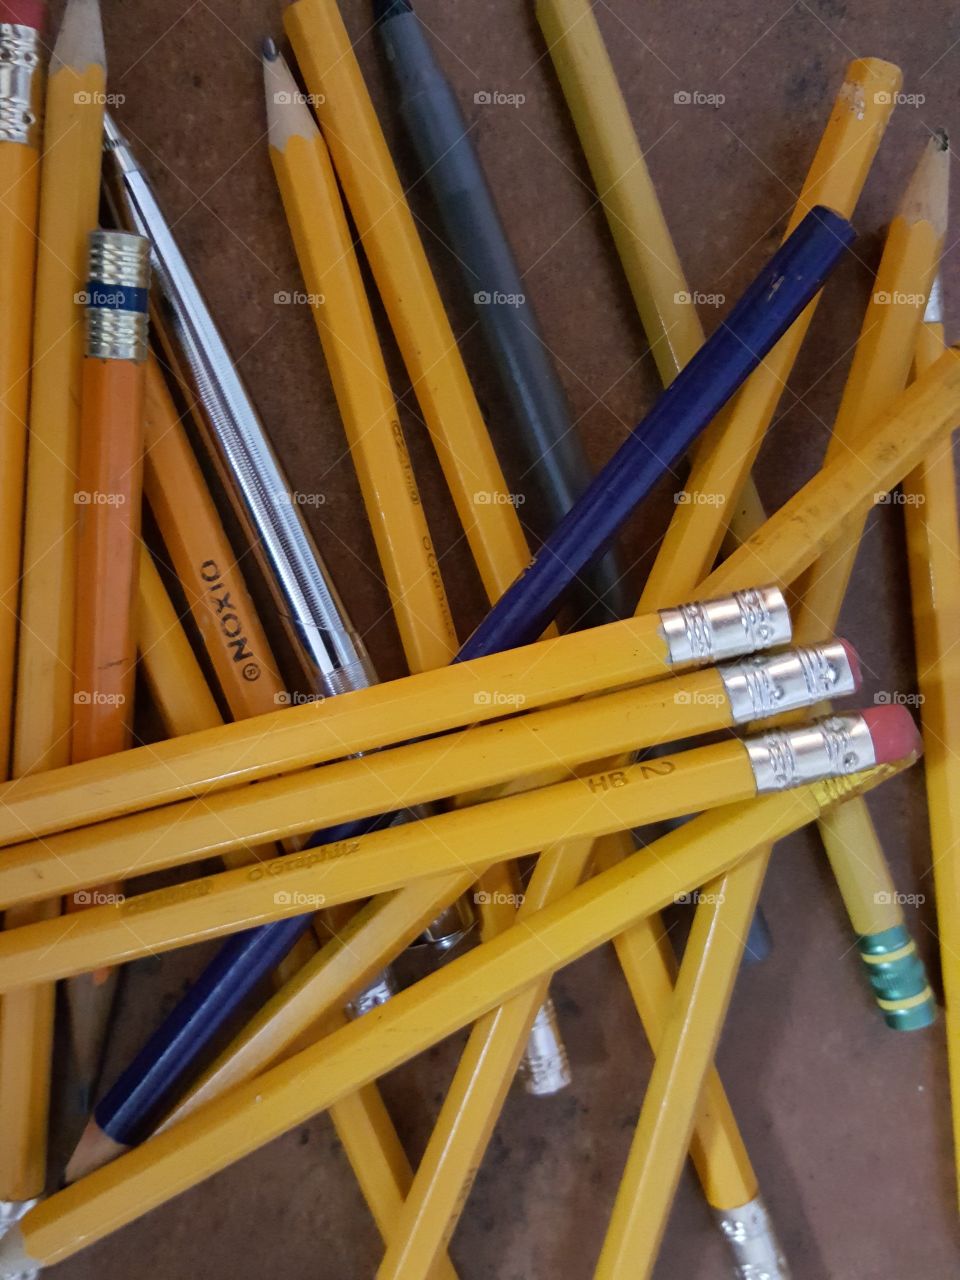 pencils scattered on a desk